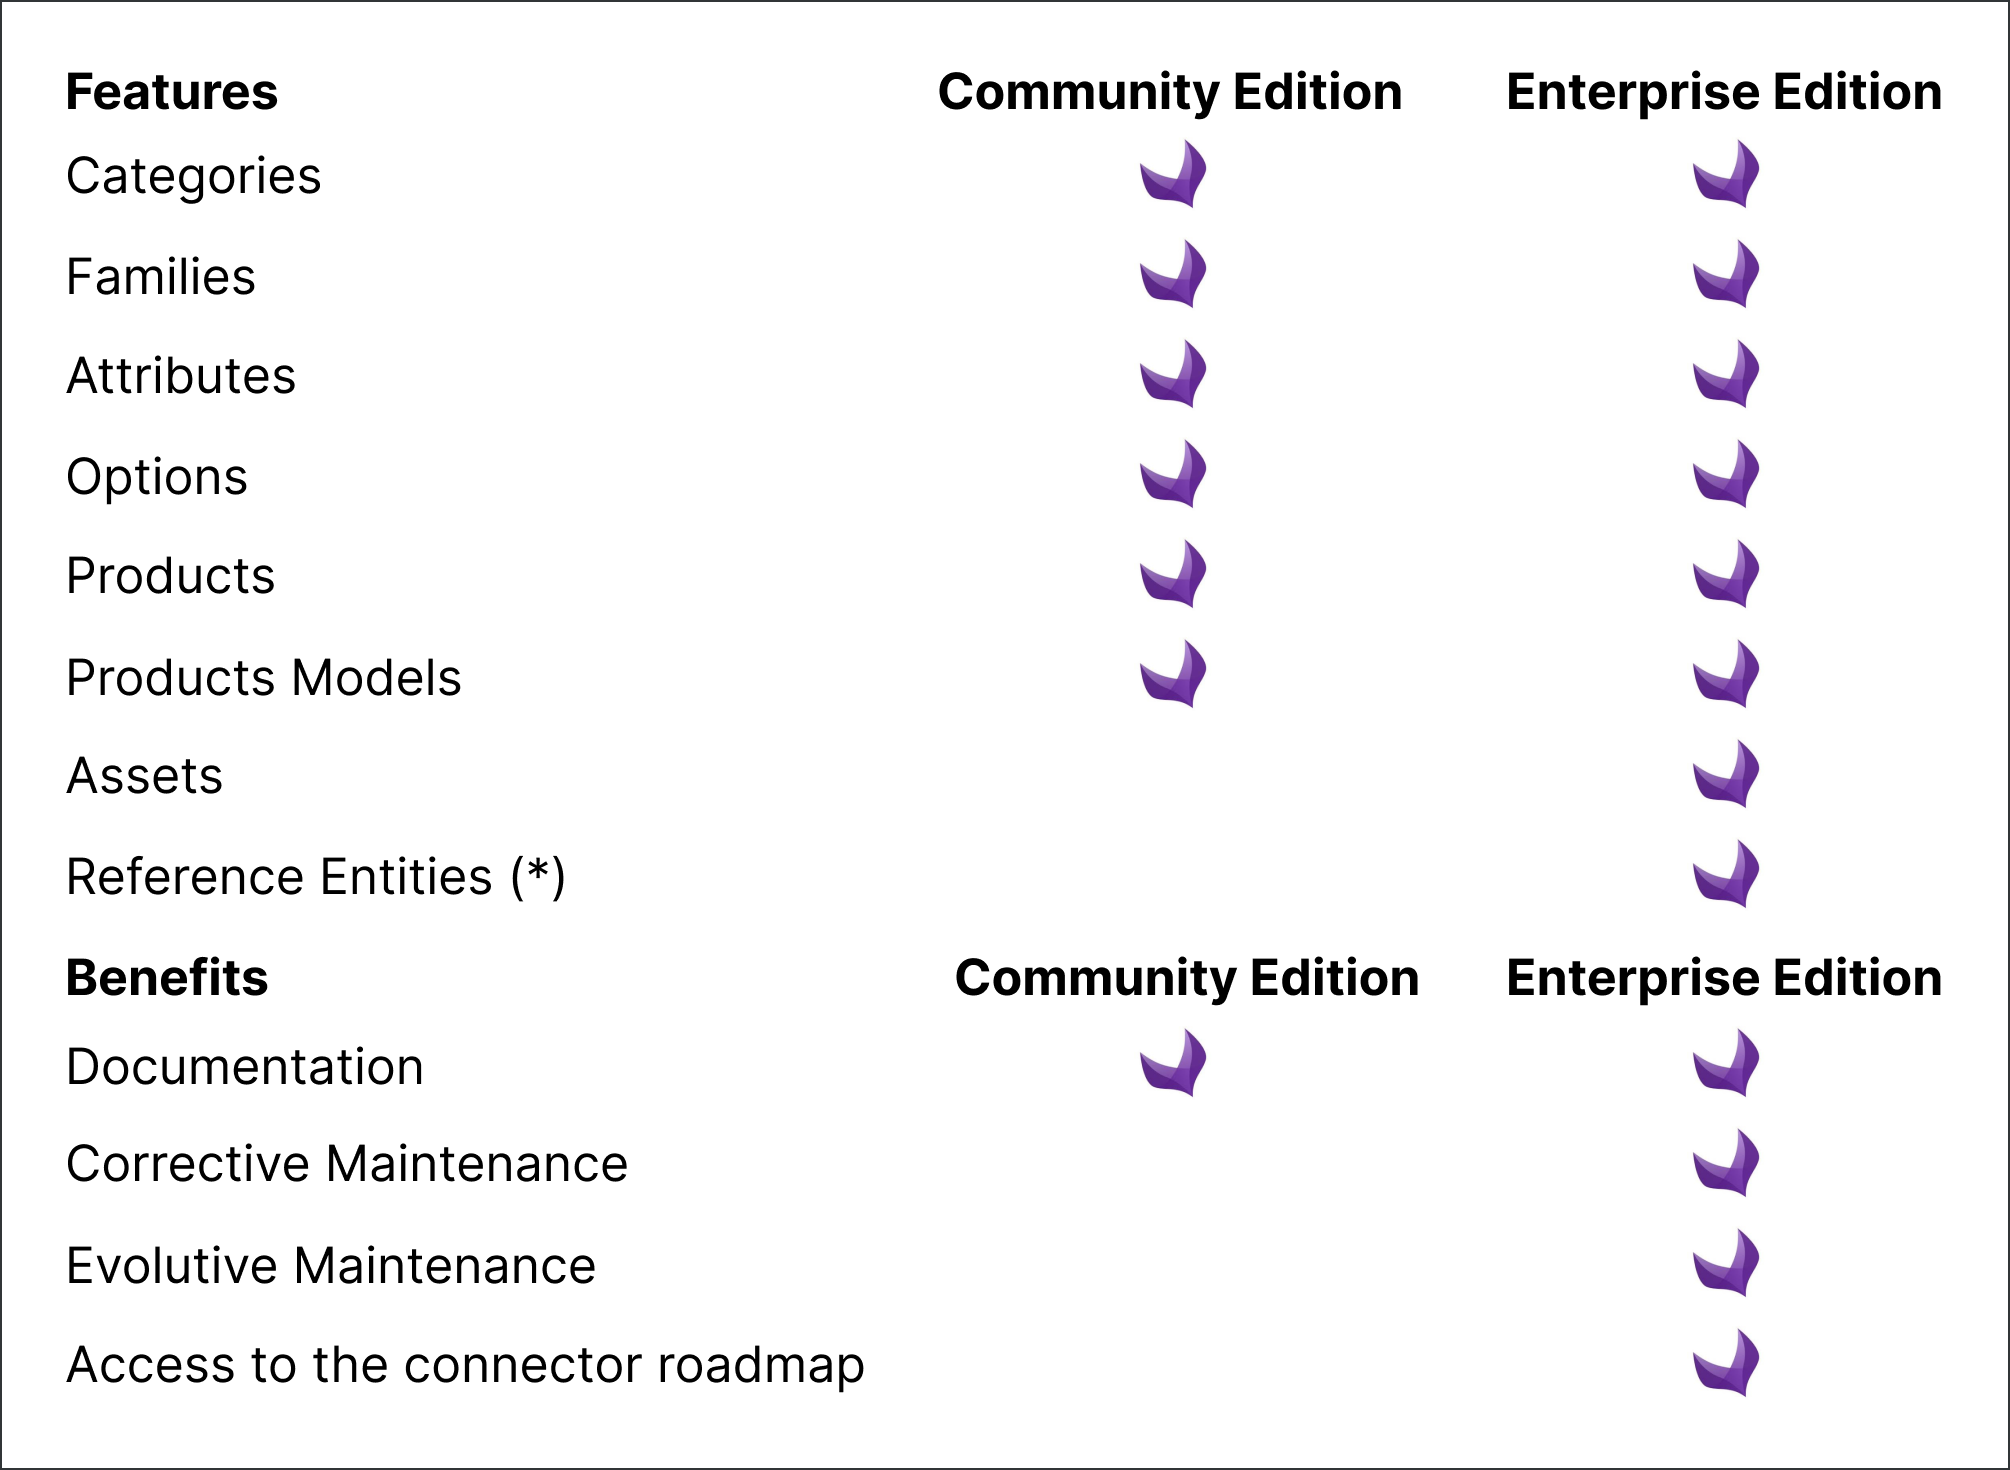 Community and Enterprise editions comparison